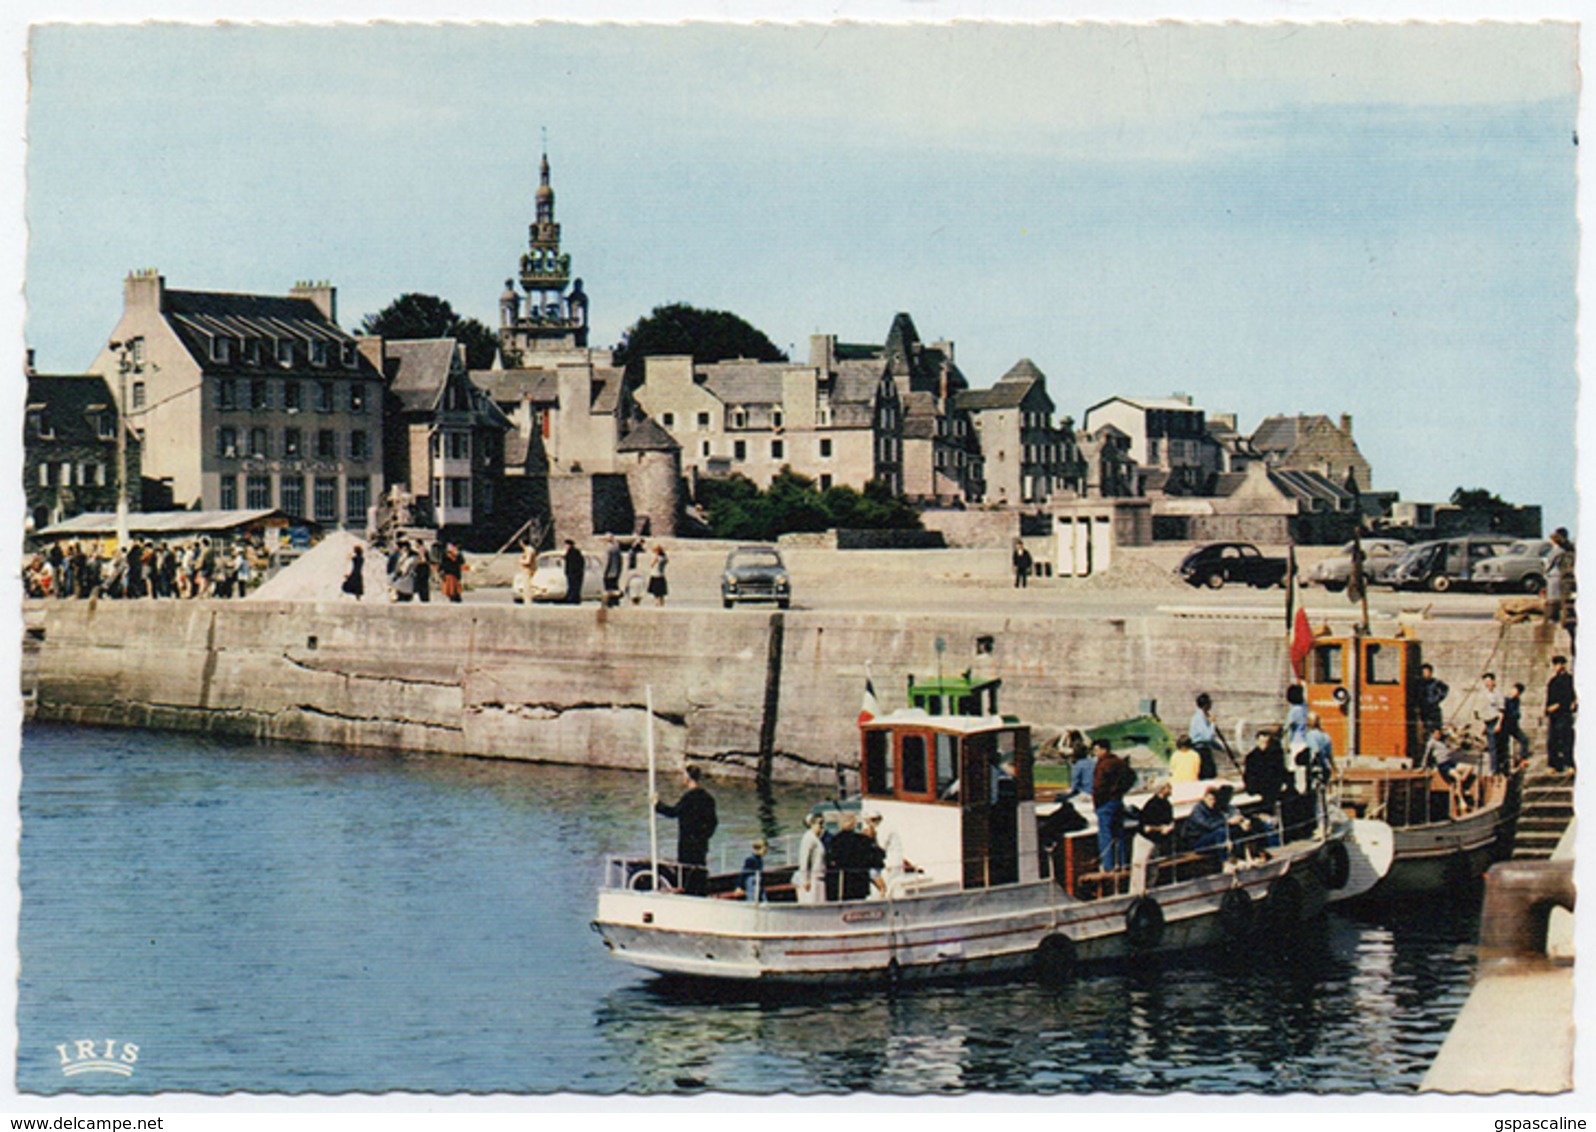 29 ROSCOFF - 1826 - Edts Lumicap - Le Port, Vedettes De L'Ile De Batz. - Roscoff